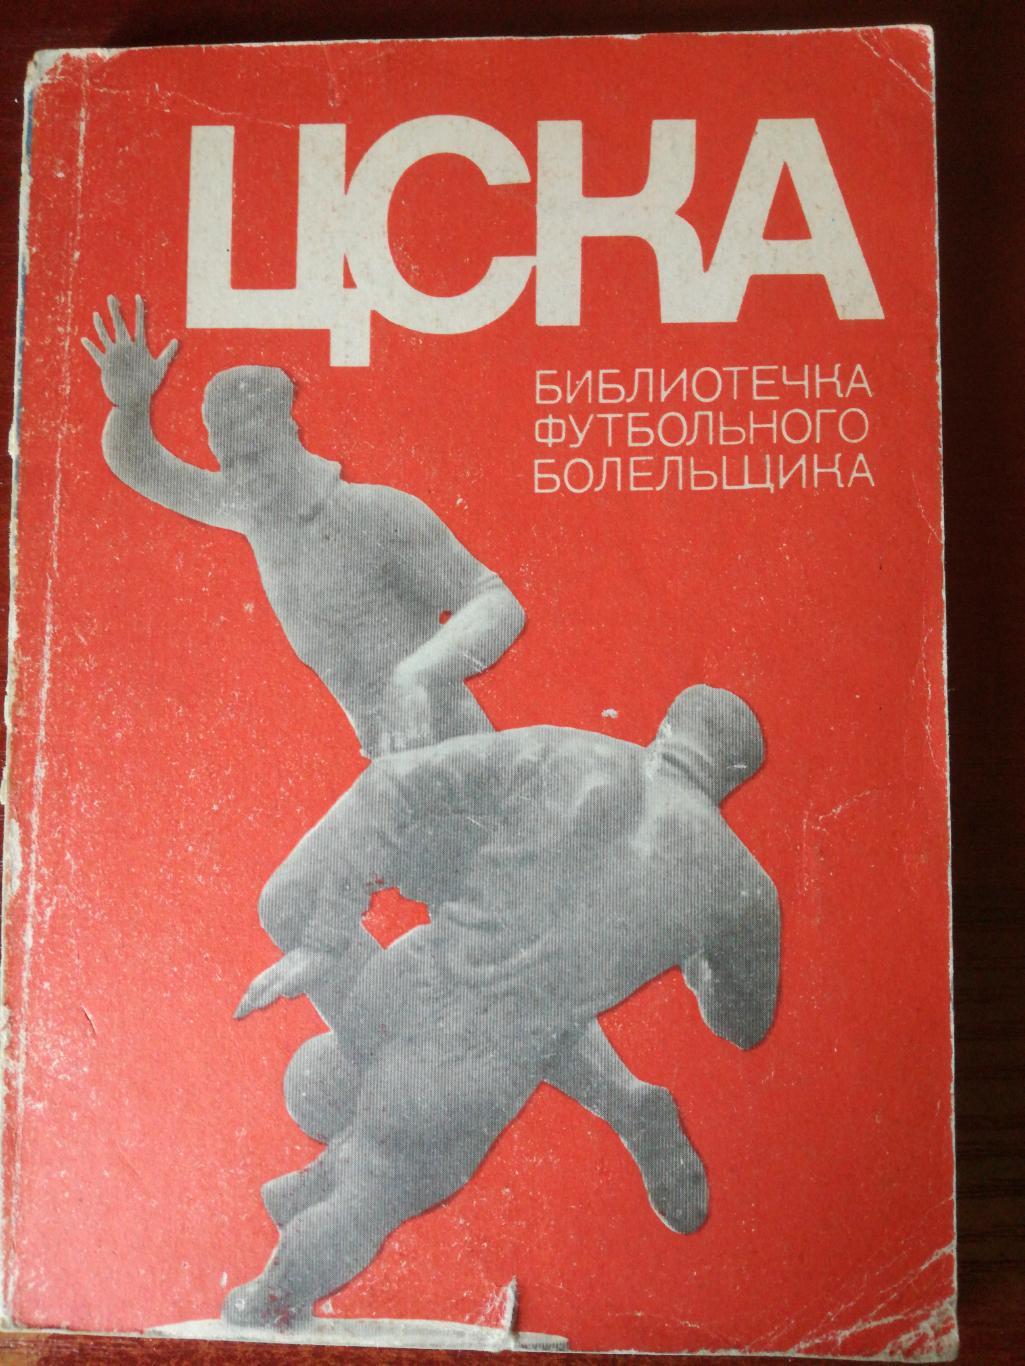 ЦСКА Москва. Библиотечка футбольного болельщика, 1973